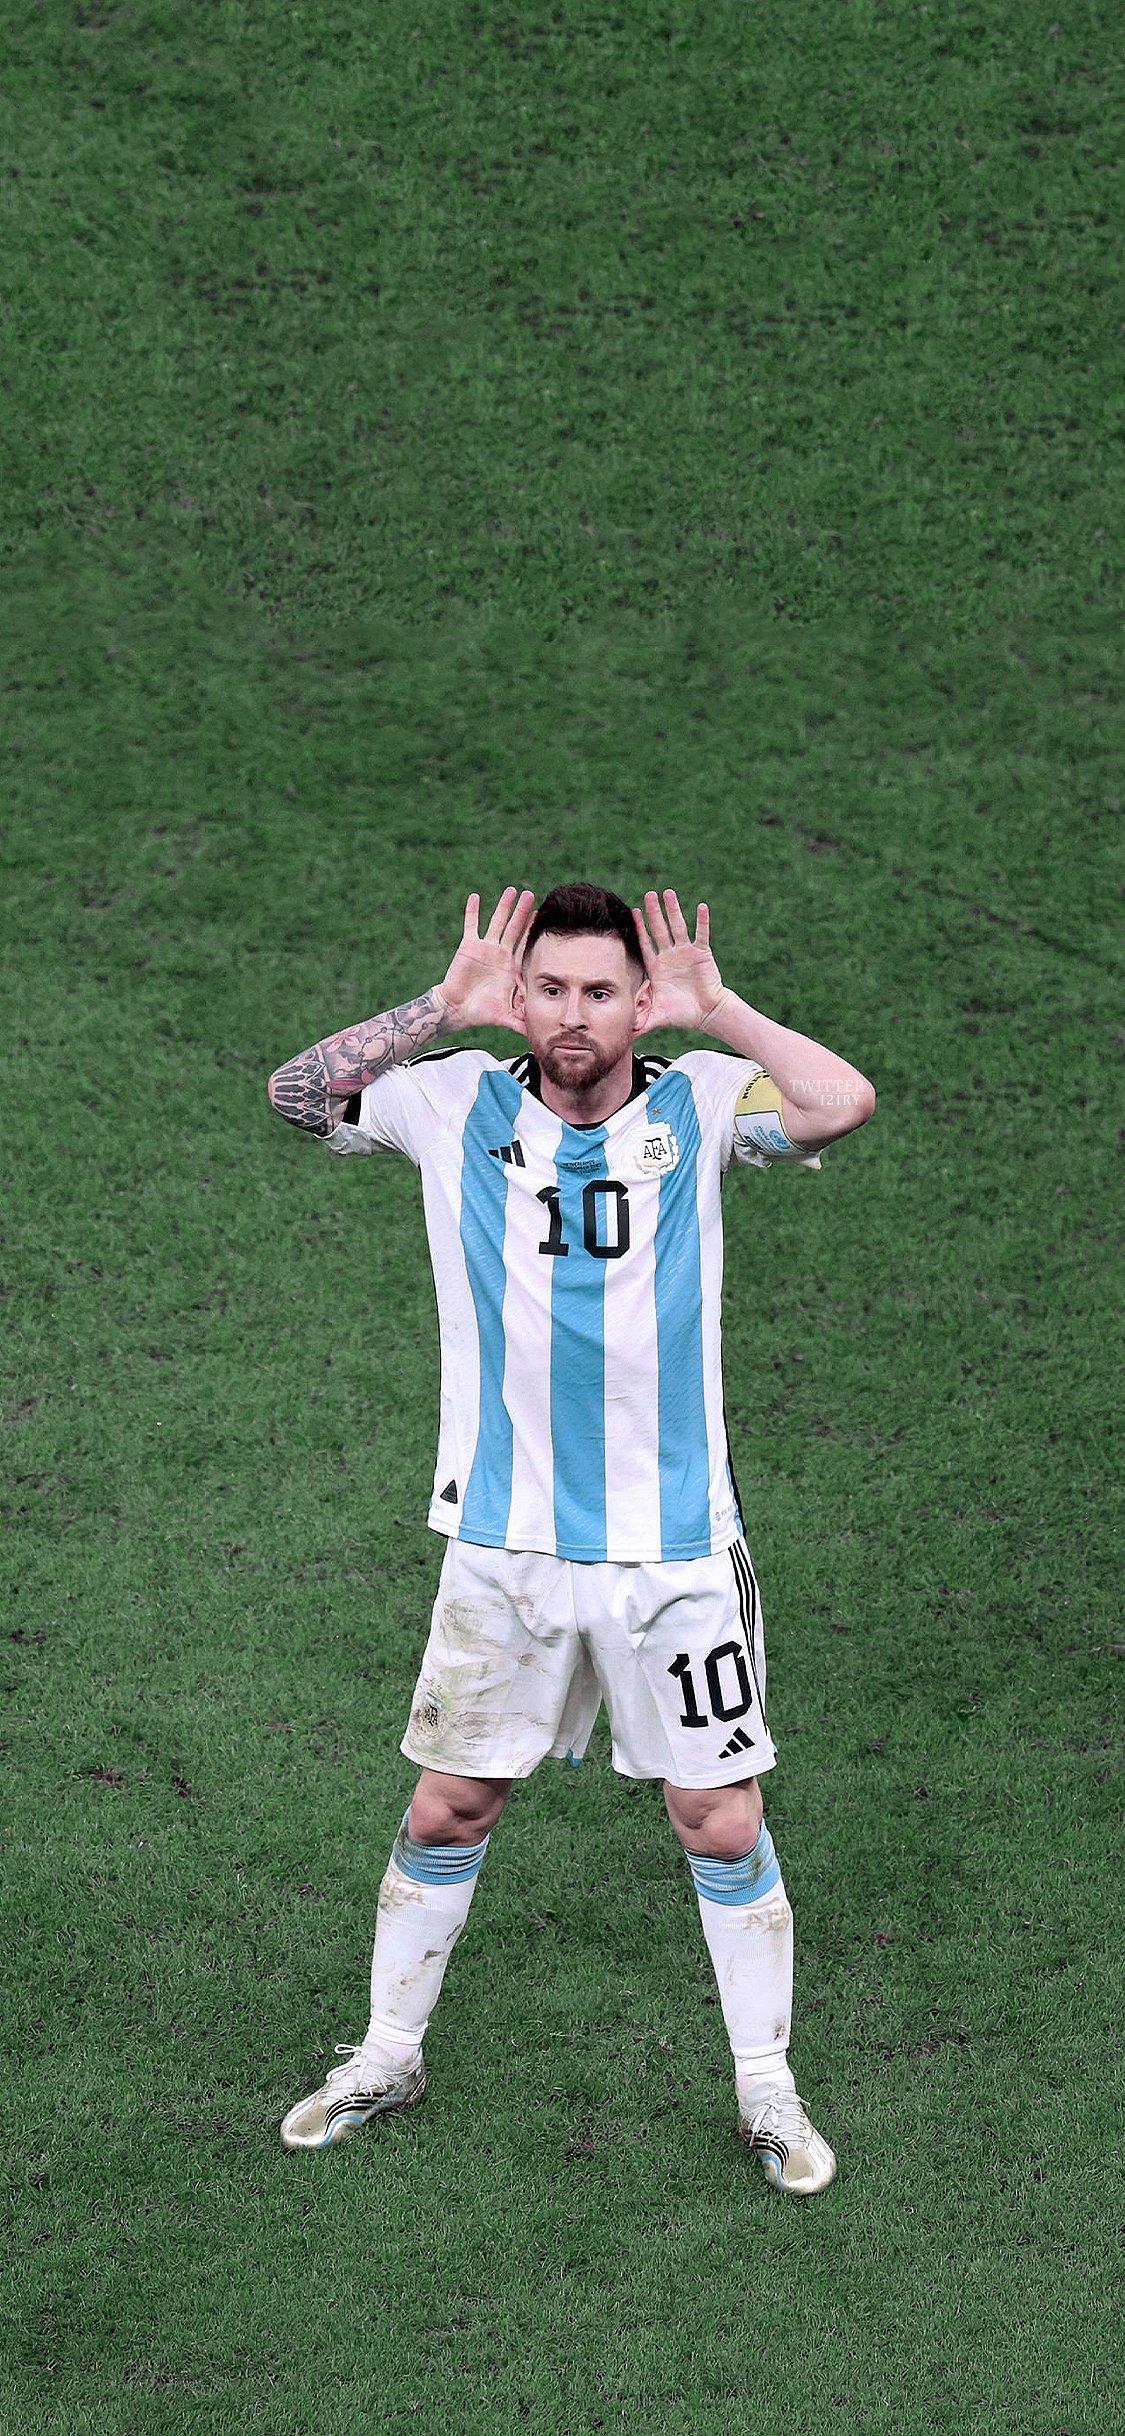 Argentina World Cup Wallpapers sẽ giúp bạn phát triển lòng yêu đội tuyển bóng đá của mình và quan tâm tới chặng đường World Cup sắp tới.